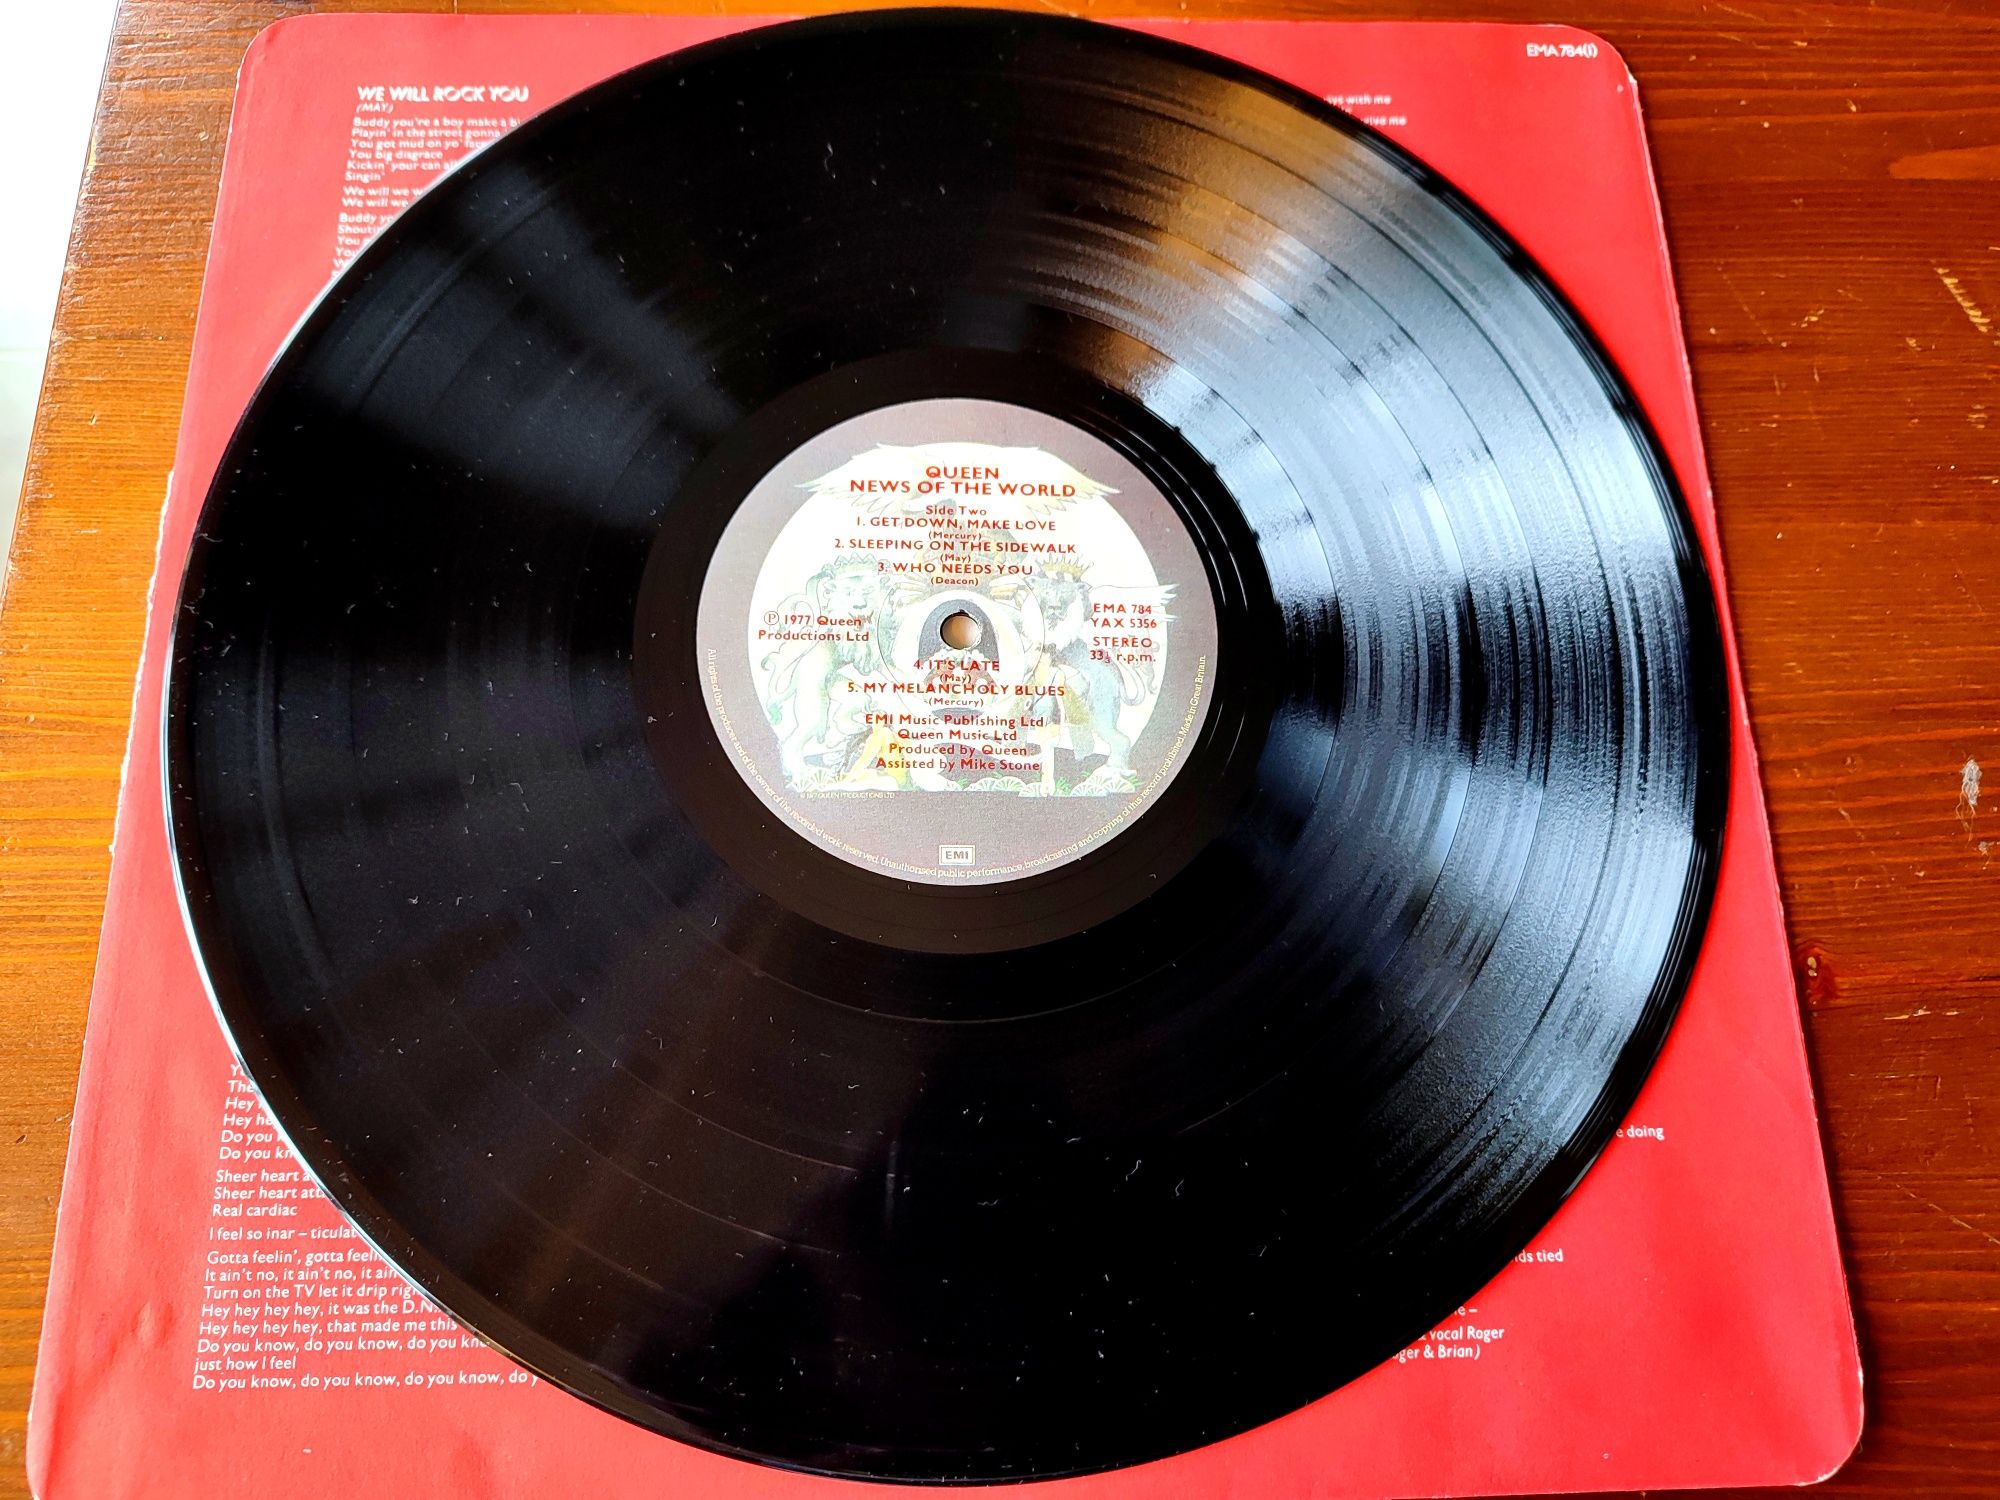 Queen - News Of The World Álbum Edição Original UK Anos 70